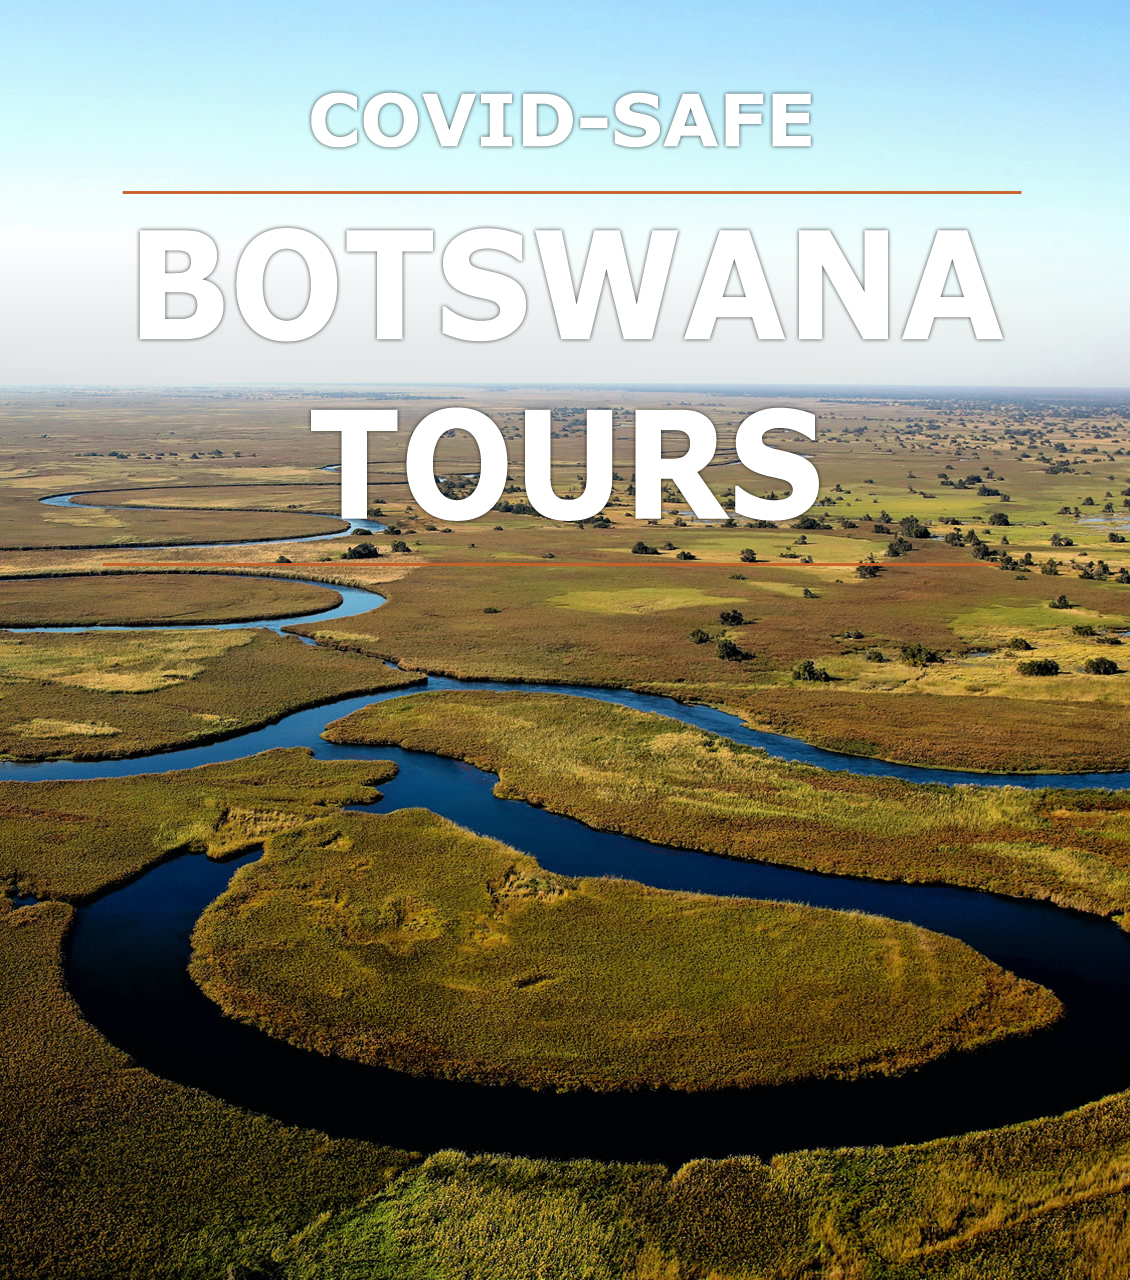 tour botswana from uk